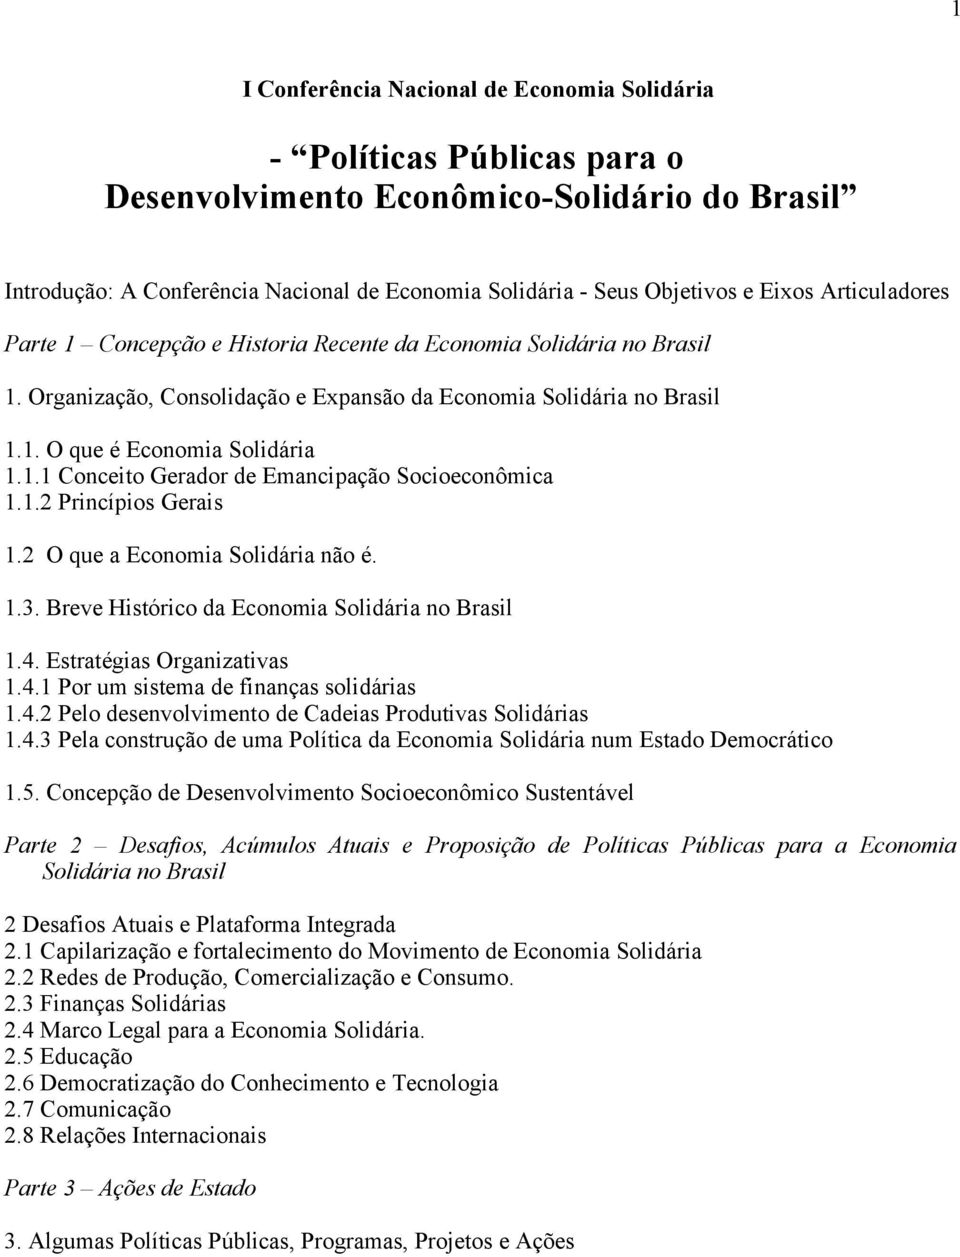 1.2 Princípios Gerais 1.2 O que a Economia Solidária não é. 1.3. Breve Histórico da Economia Solidária no Brasil 1.4. Estratégias Organizativas 1.4.1 Por um sistema de finanças solidárias 1.4.2 Pelo desenvolvimento de Cadeias Produtivas Solidárias 1.